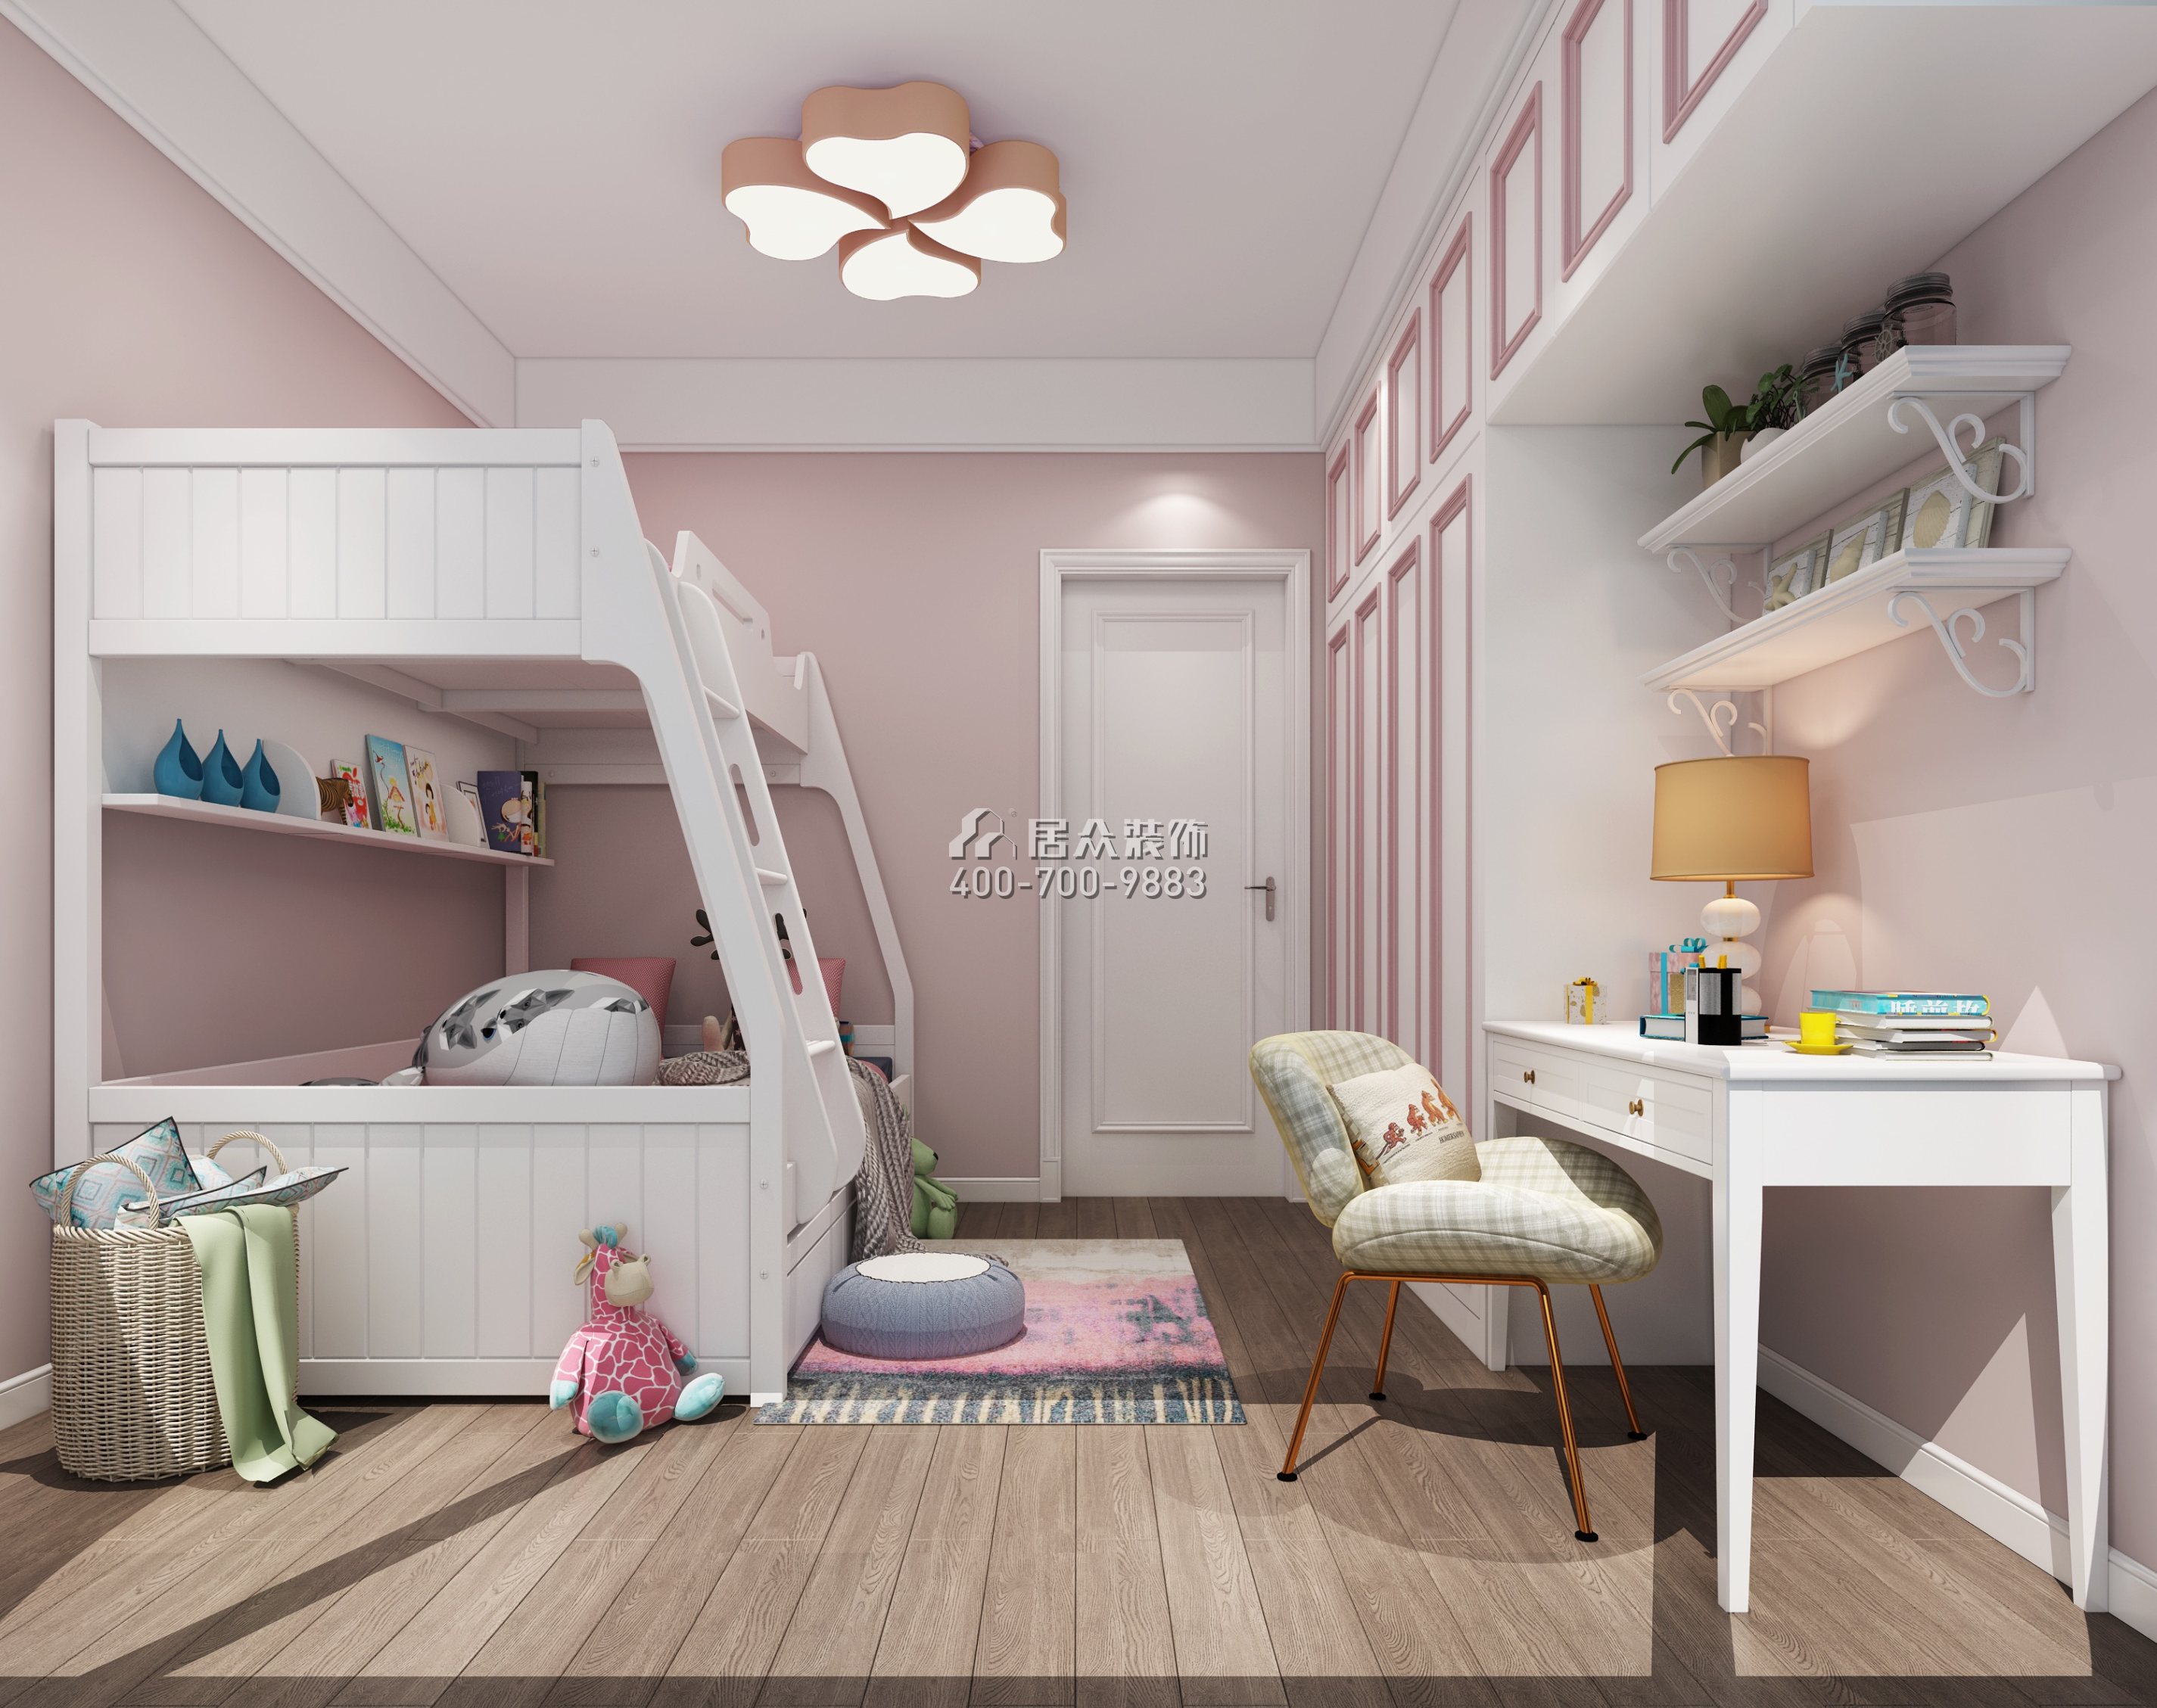 睿智華庭150平方米現代簡約風格平層戶型兒童房裝修效果圖